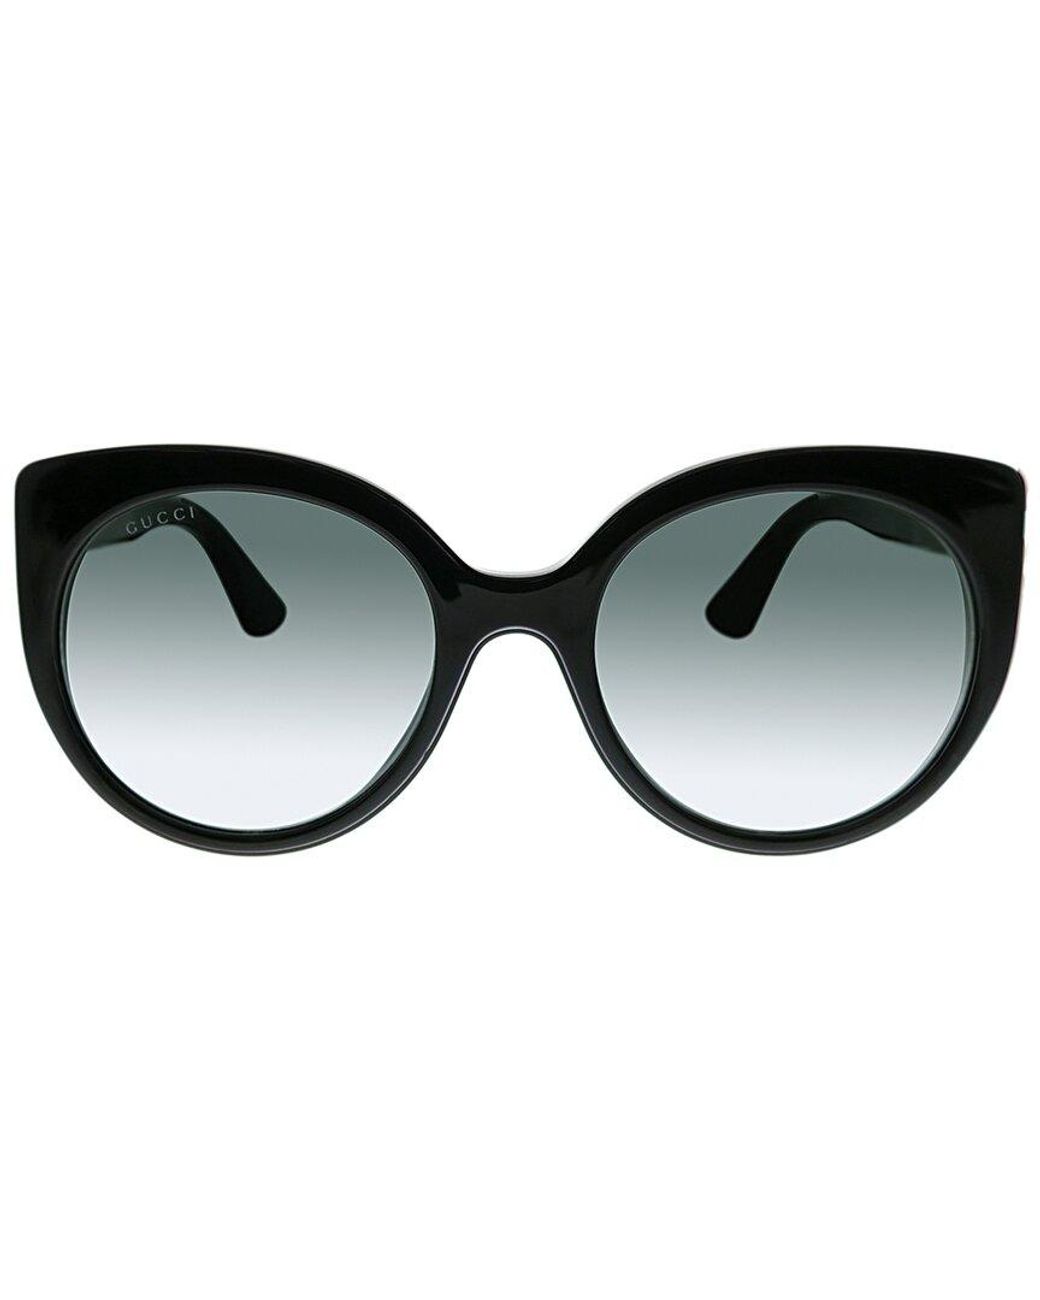 Gucci GG0325S 55mm Sunglasses in Black | Lyst